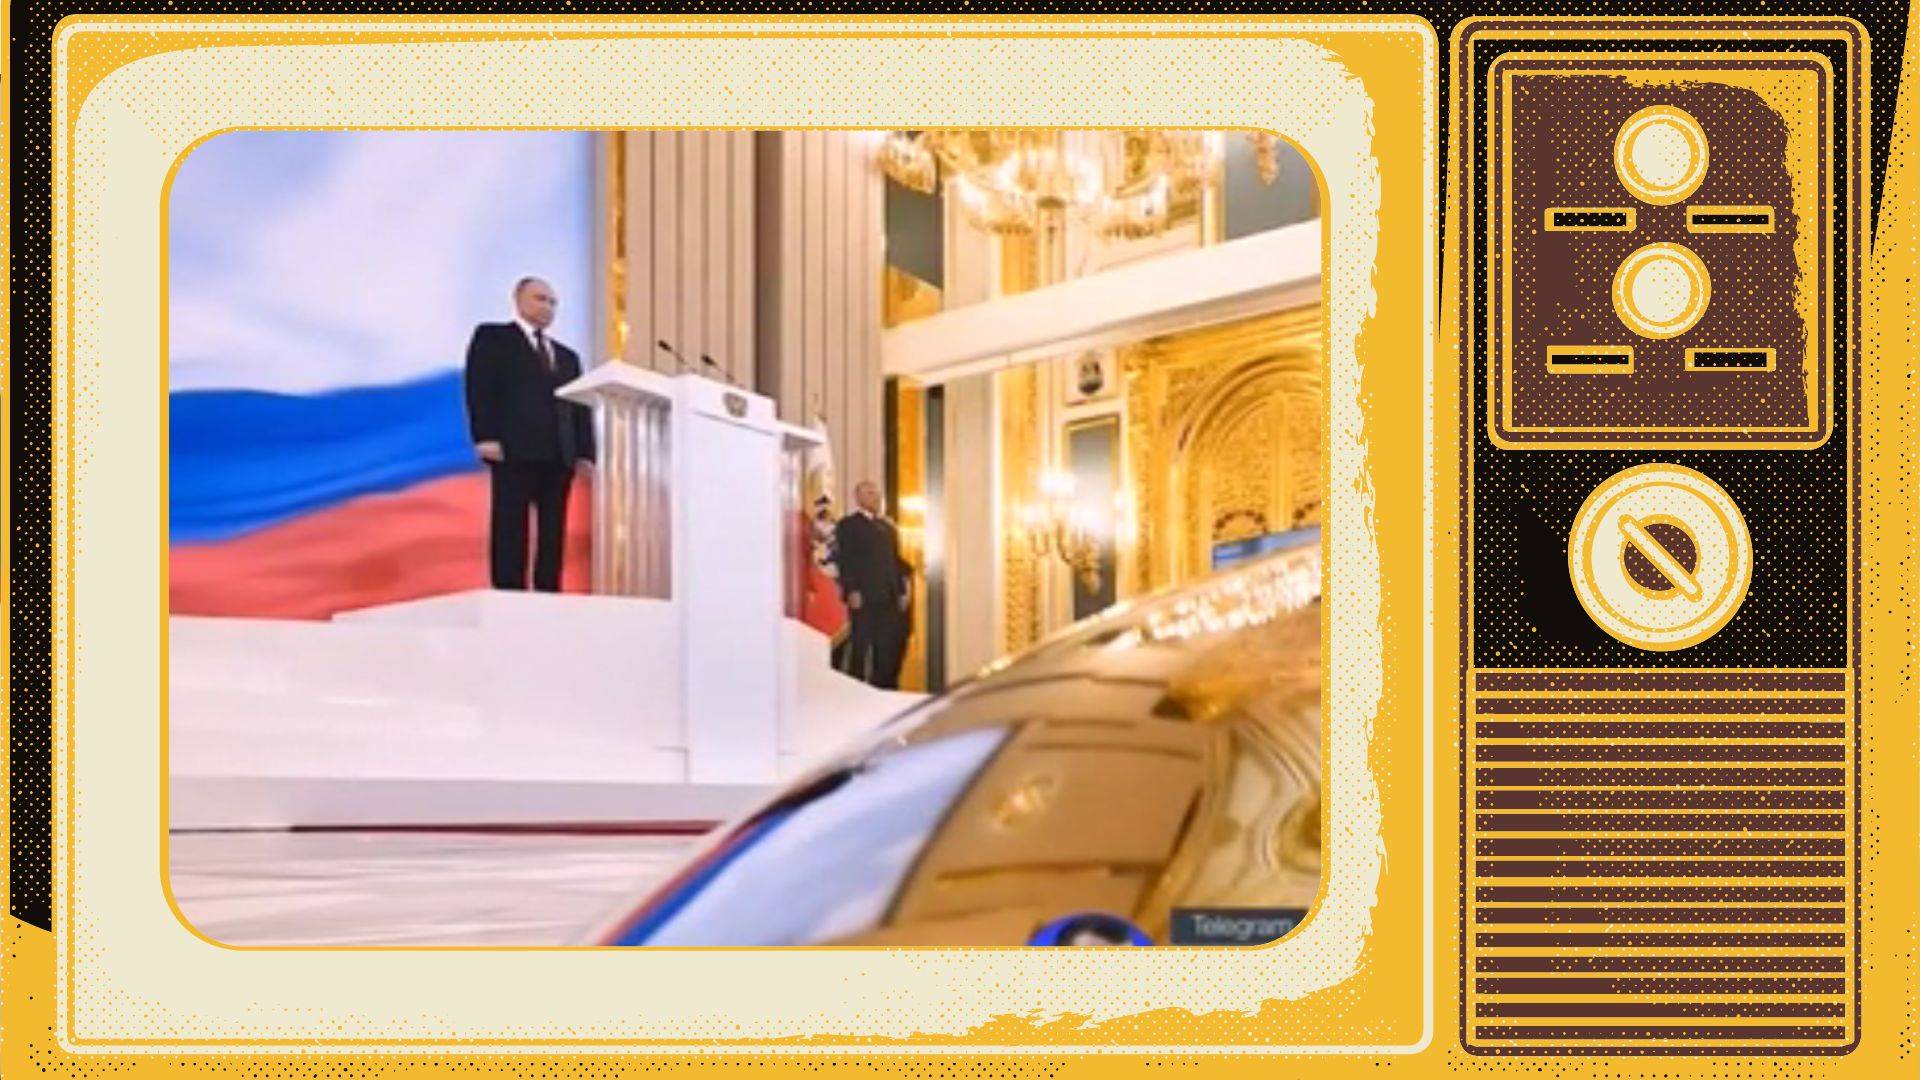 Grafika. Zdjęcie Putina w złoconej sali w ramce starego telewizora